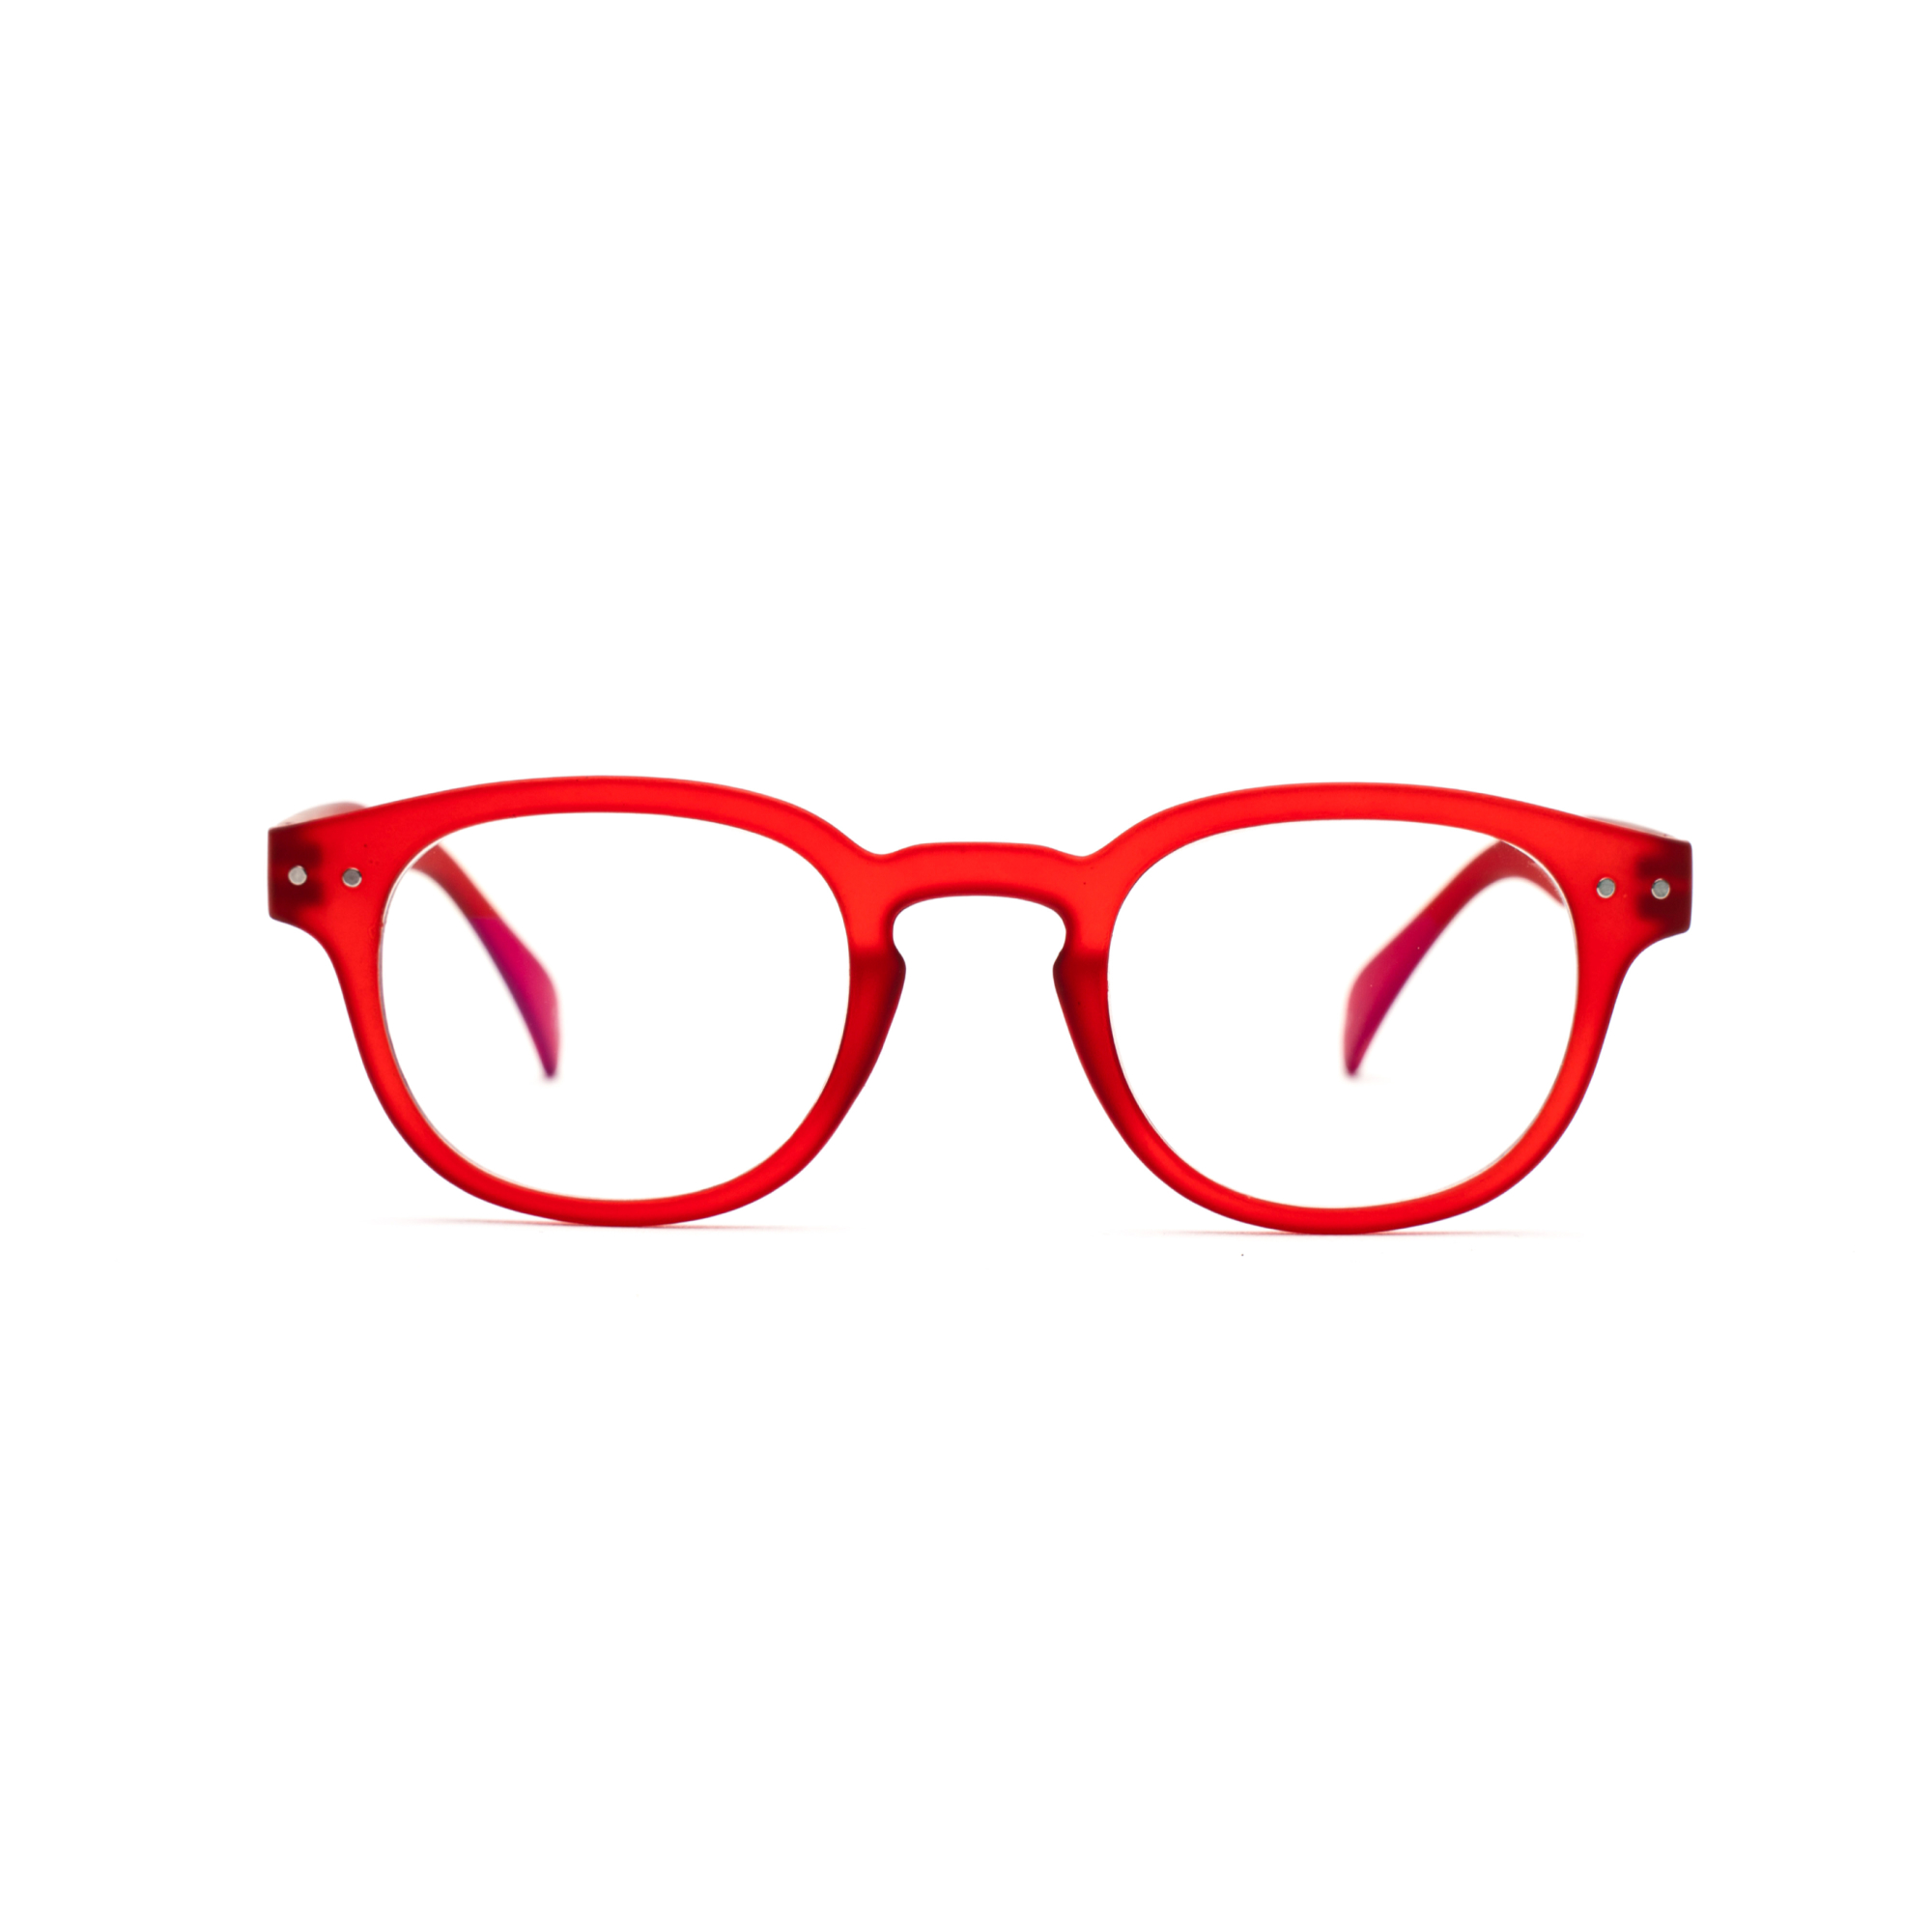 Men's blue light reading glasses – Anton BlueVision mm - Red